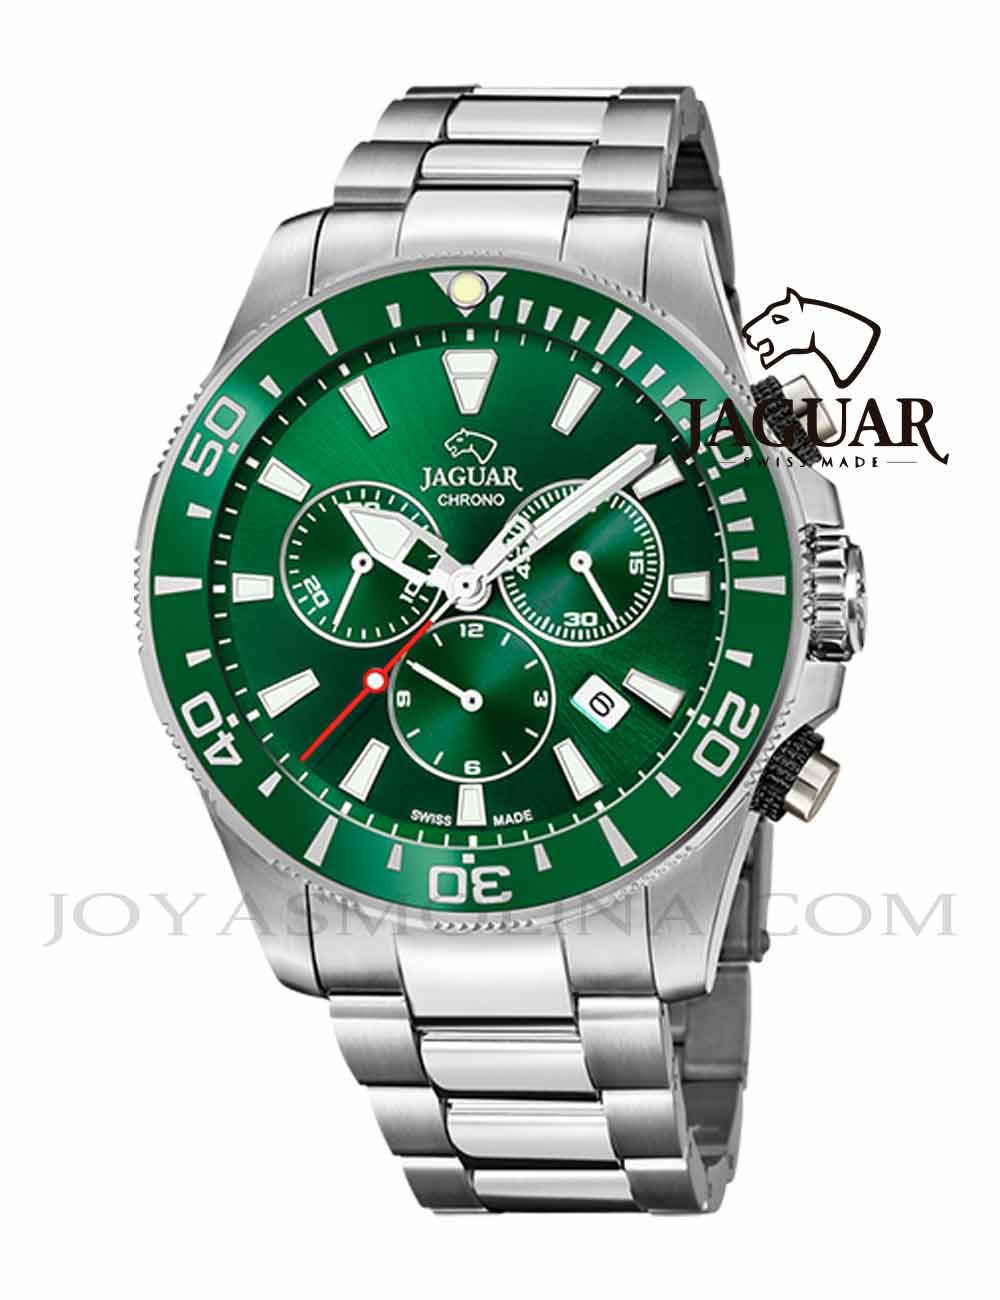 Reloj Jaguar hombre diver verde cronógrafo bisel J861-4